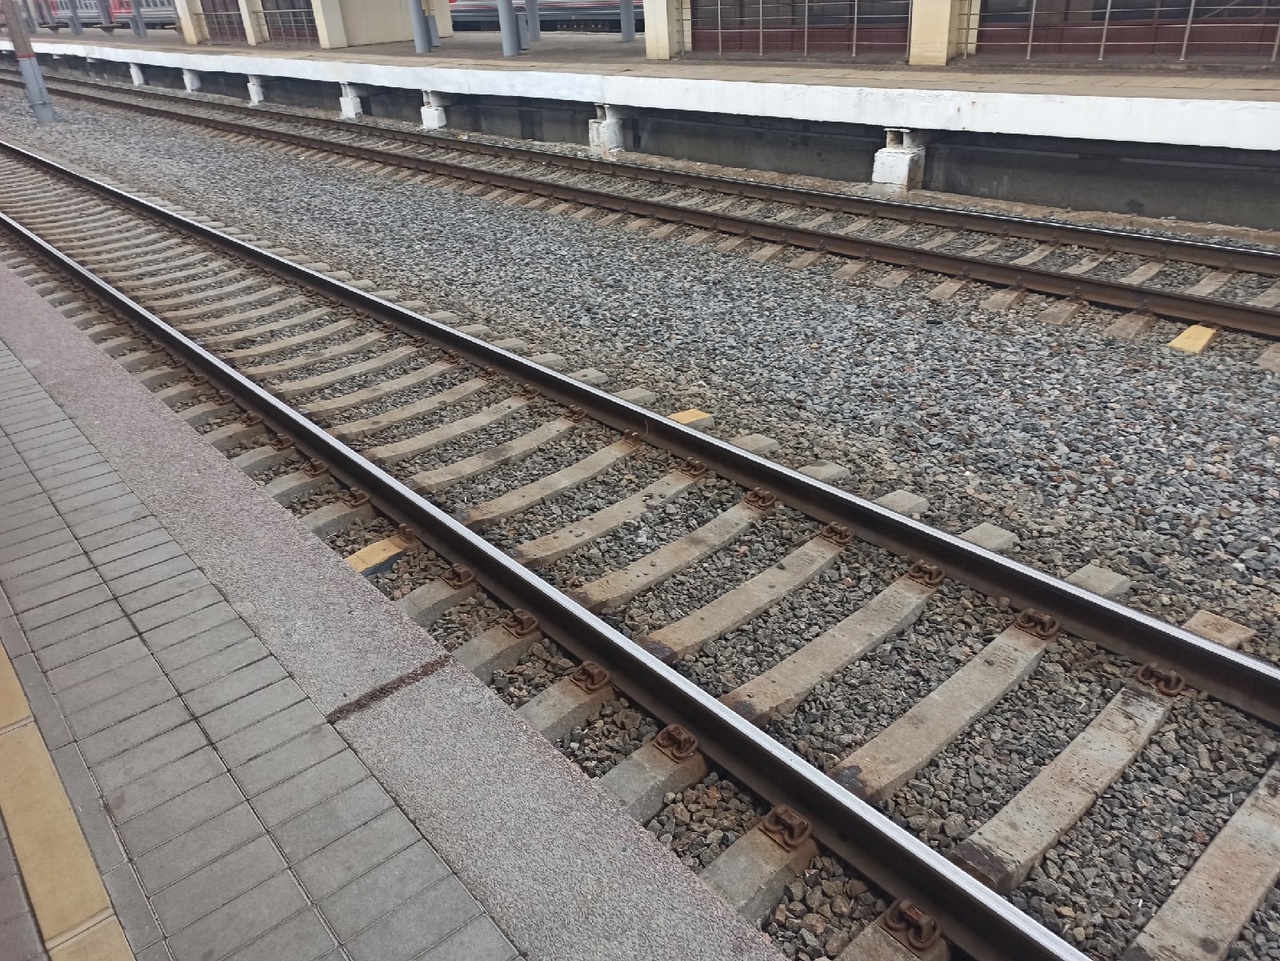 Ярославна погибла под колесами пассажирского поезда